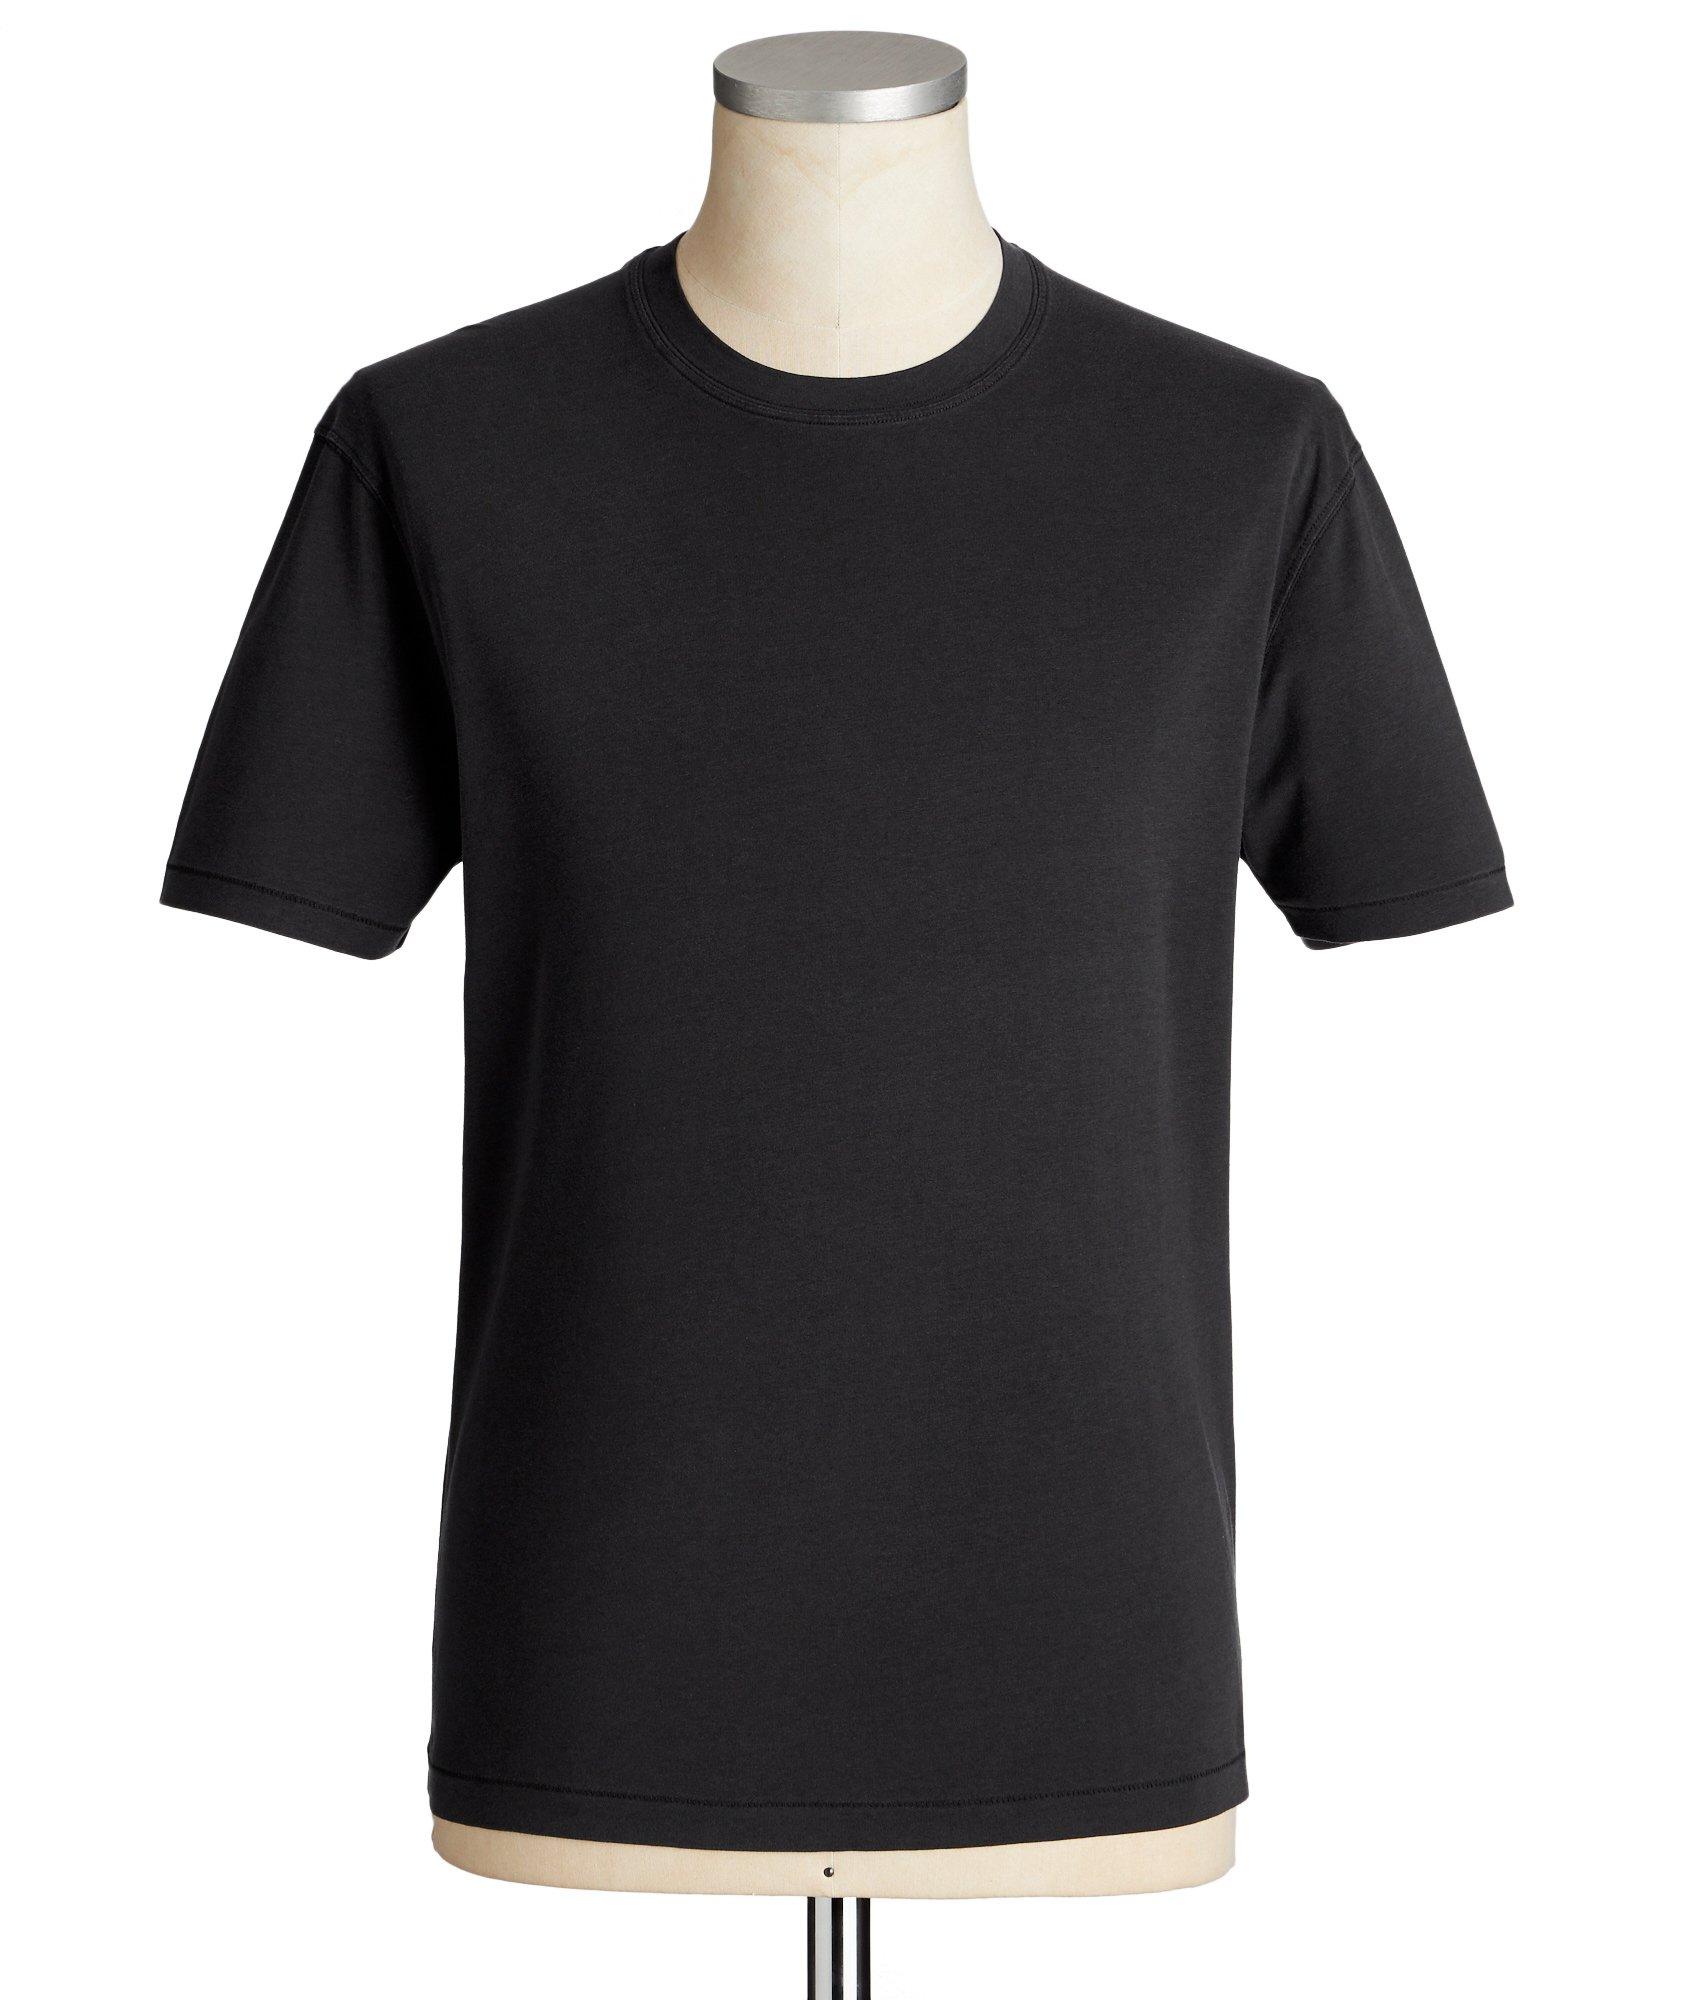 Cotton-Blend T-Shirt image 0